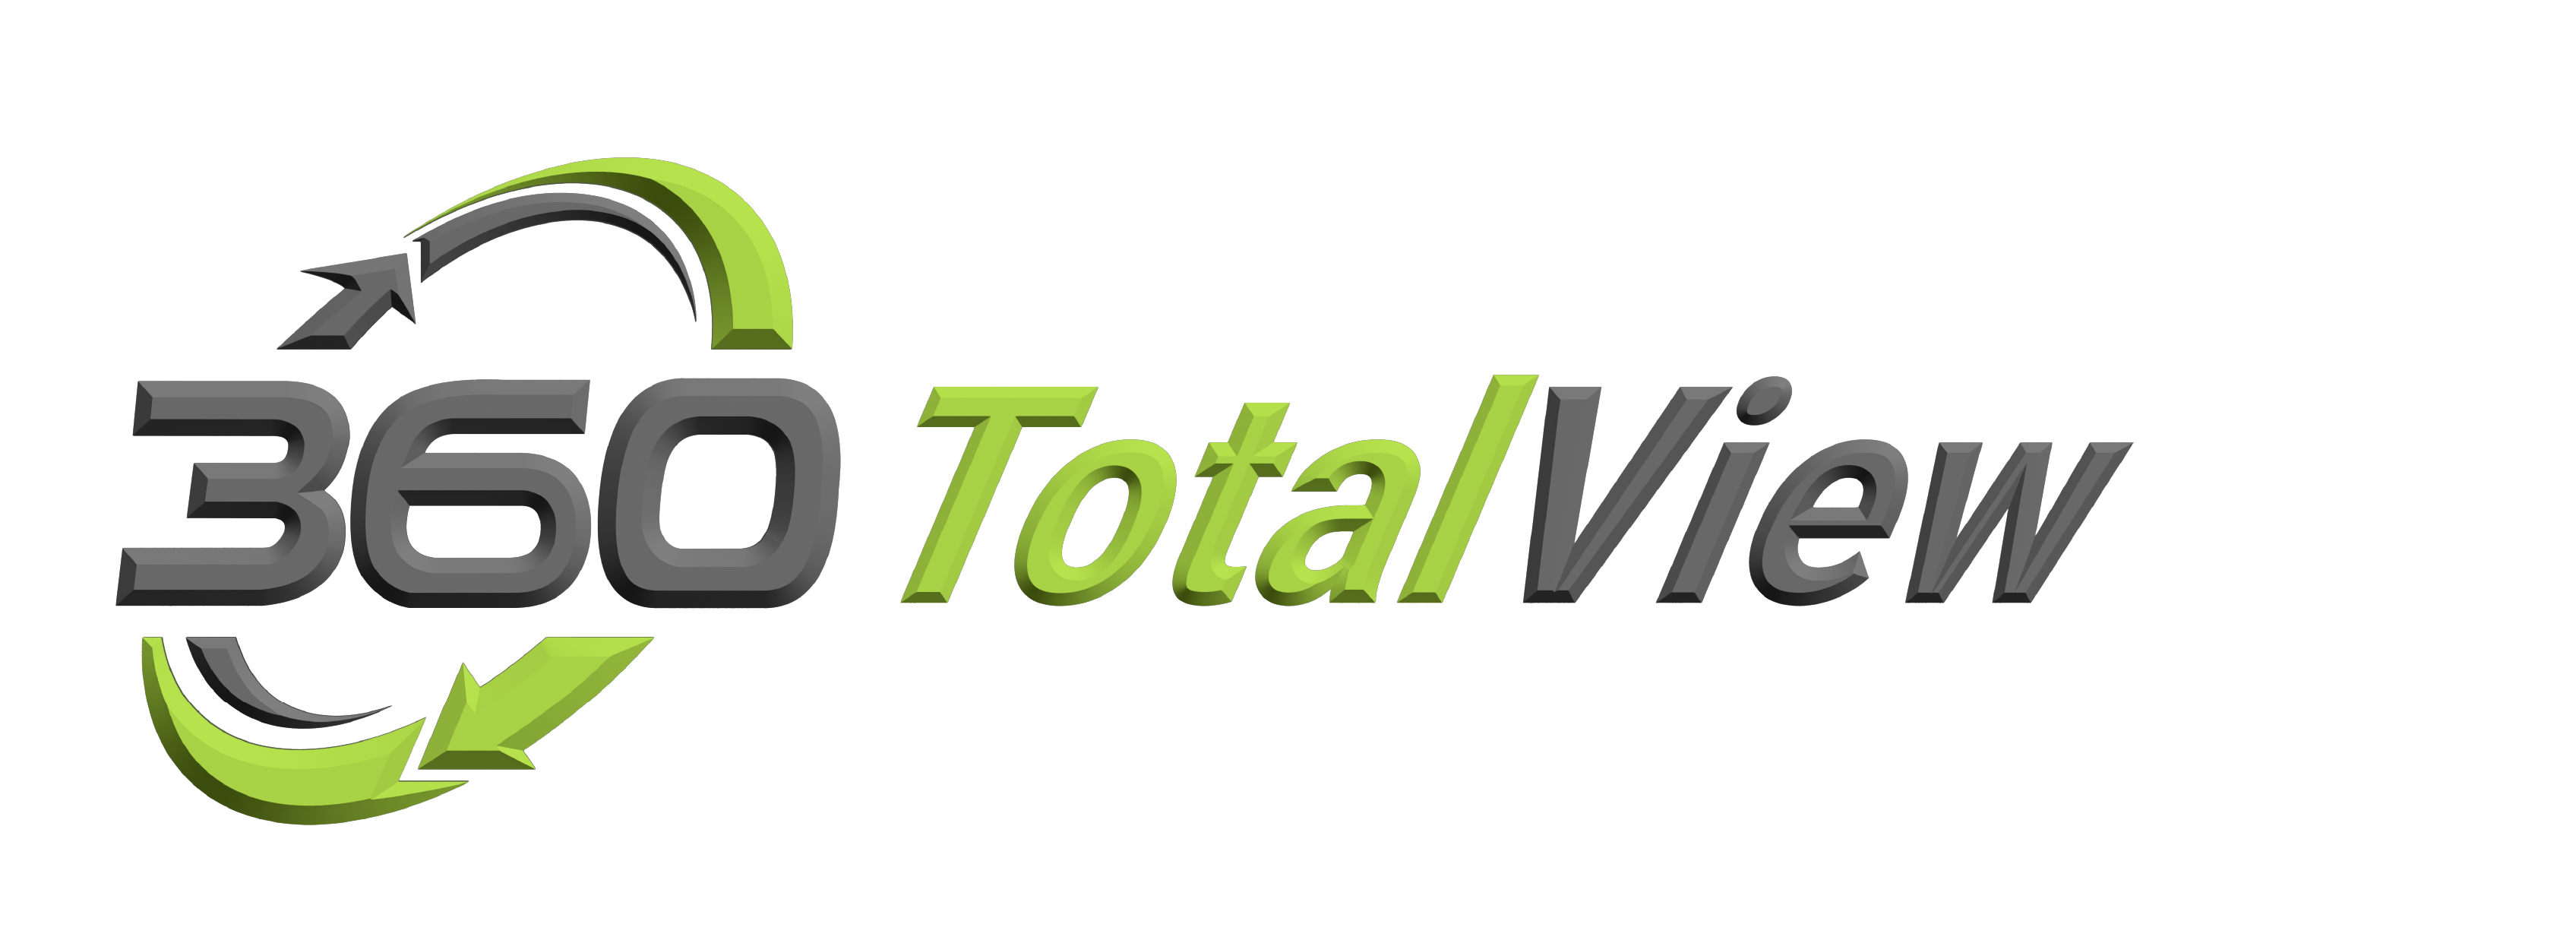 360 Legal, Inc. Florida Process Server Client Portal TotalView Logo